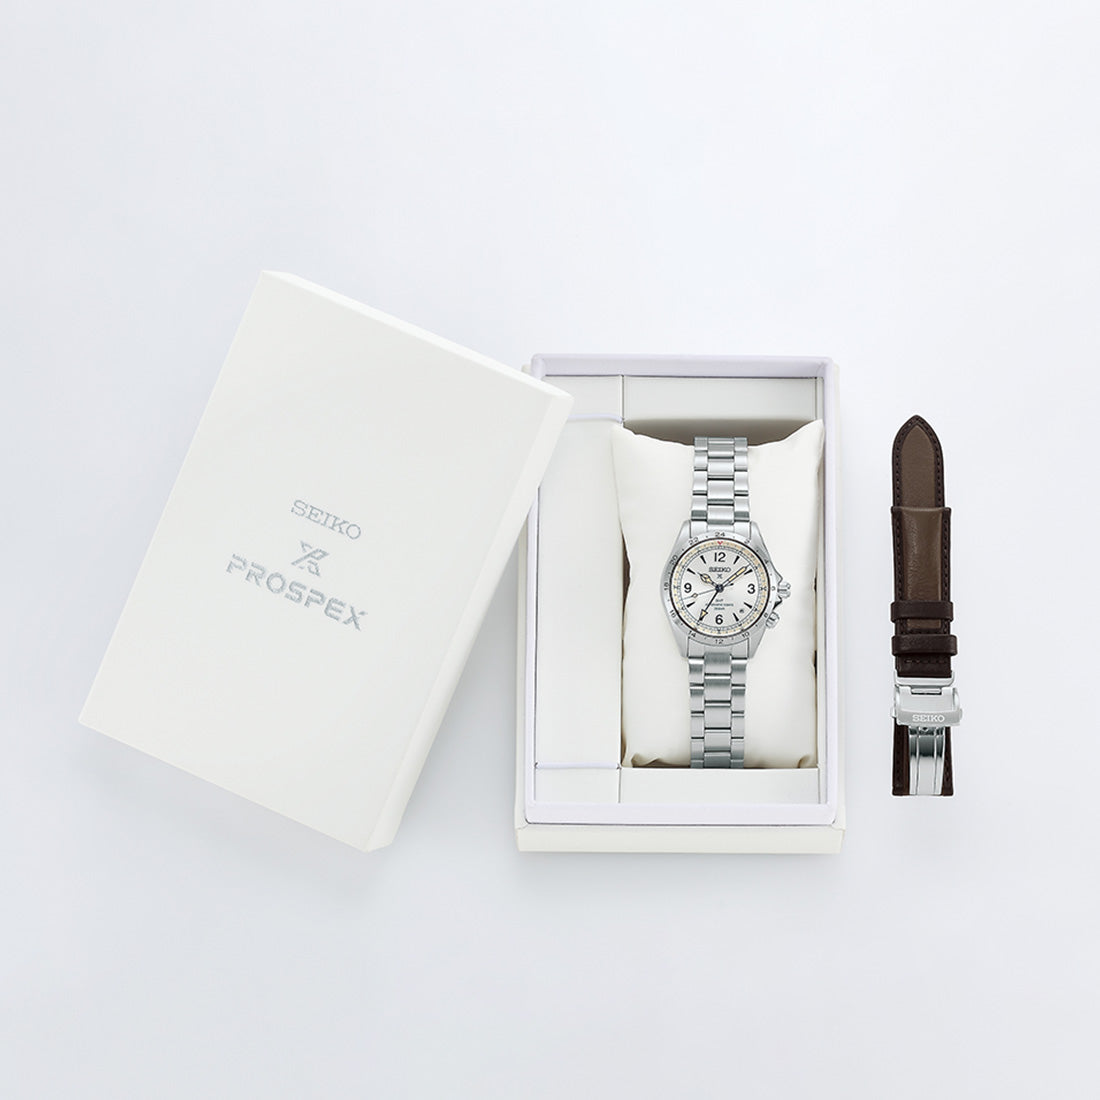 アルピニスト セイコー腕時計110周年記念限定モデル